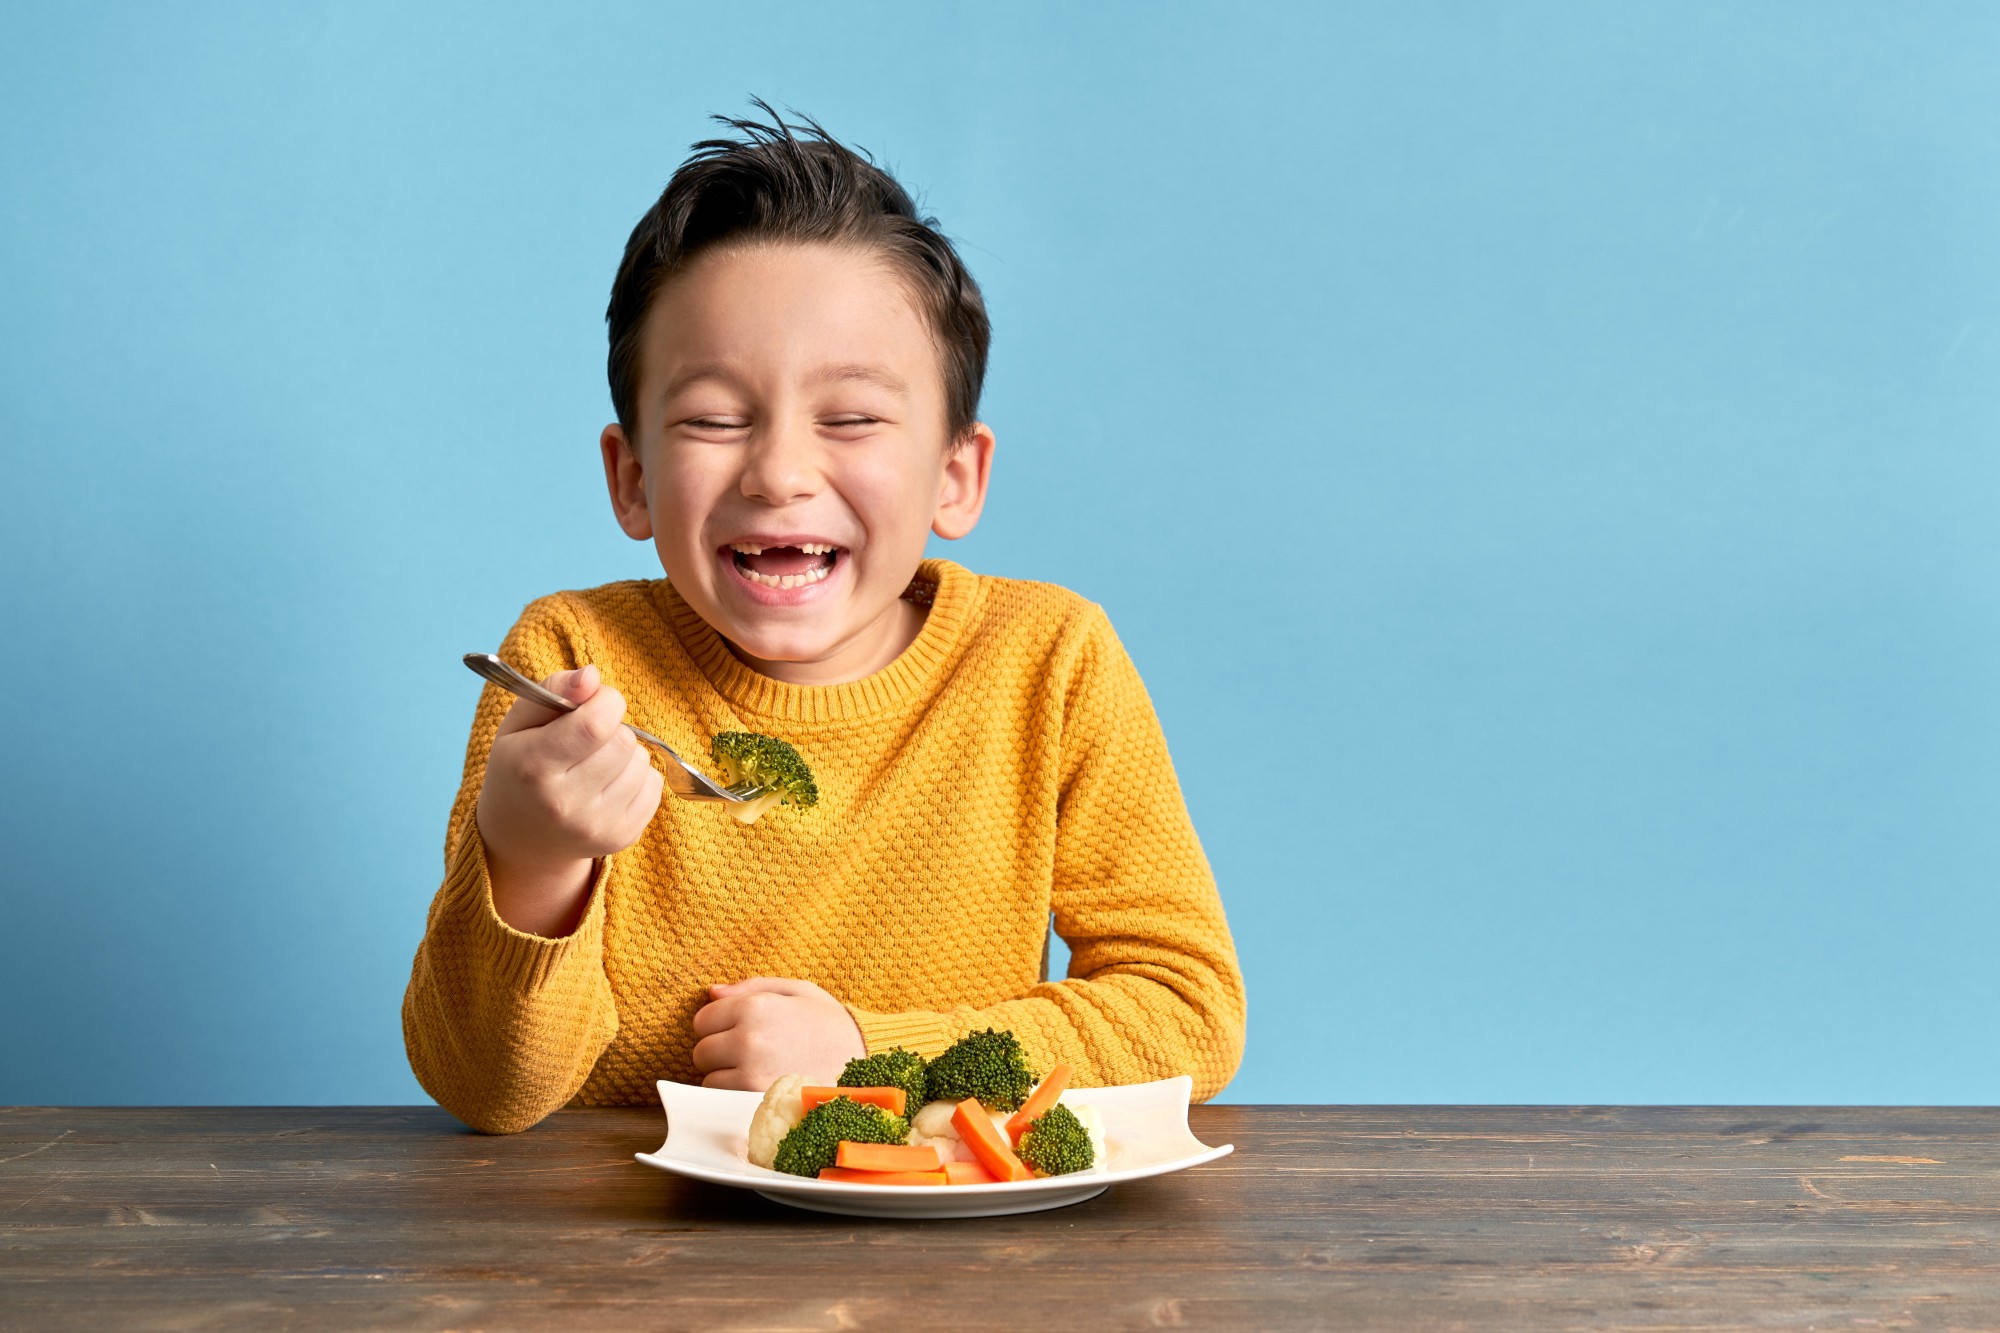 cómo alimentar bien a un niño